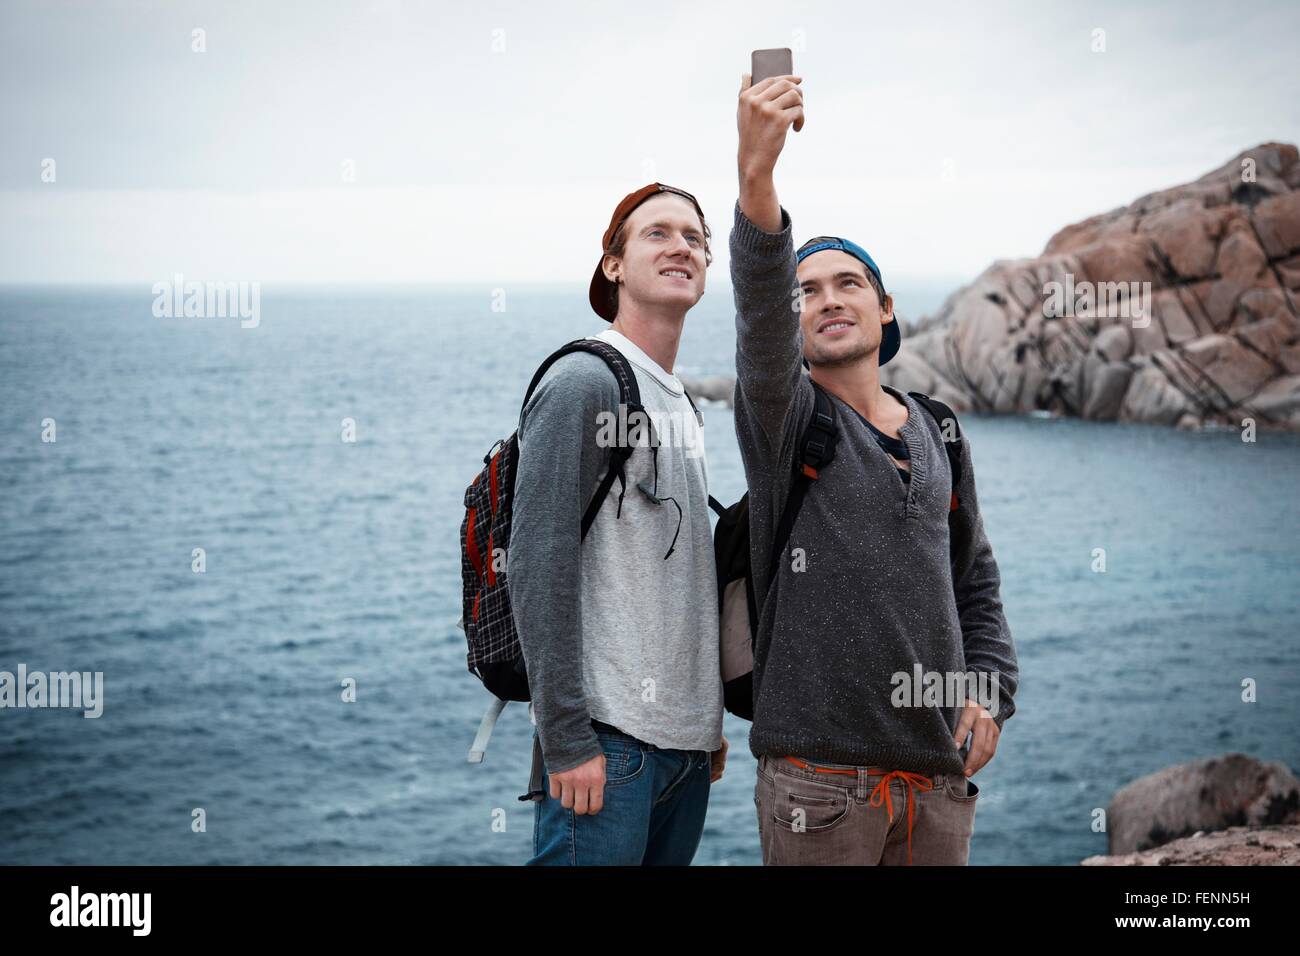 Junge Männer vor Ozean mit Smartphone zu Selfie lächelnd, Costa Smeralda, Sardinien, Italien Stockfoto